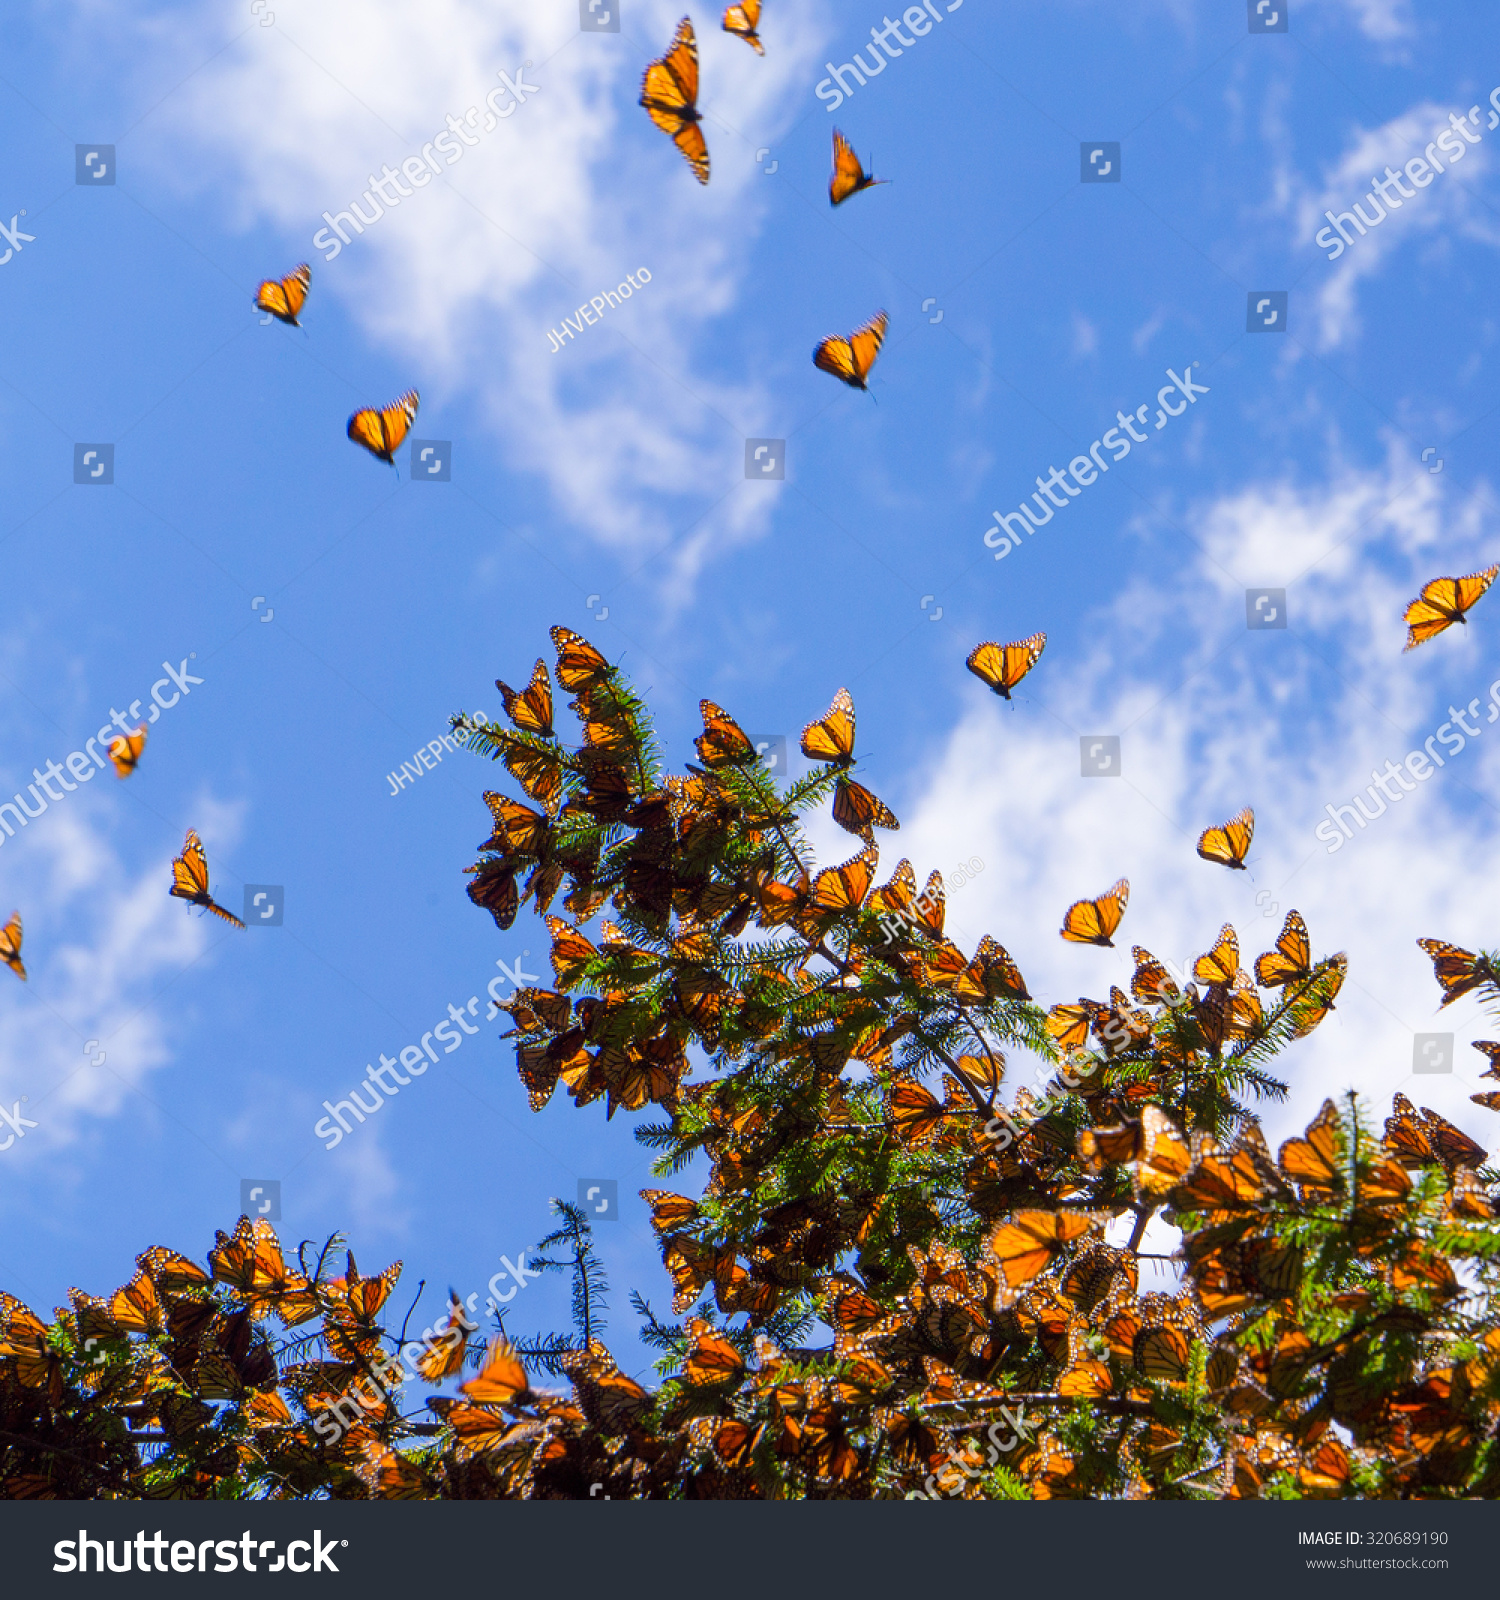 Monarch Butterflies On Tree Branch In Blue Sky Background In Michoacan